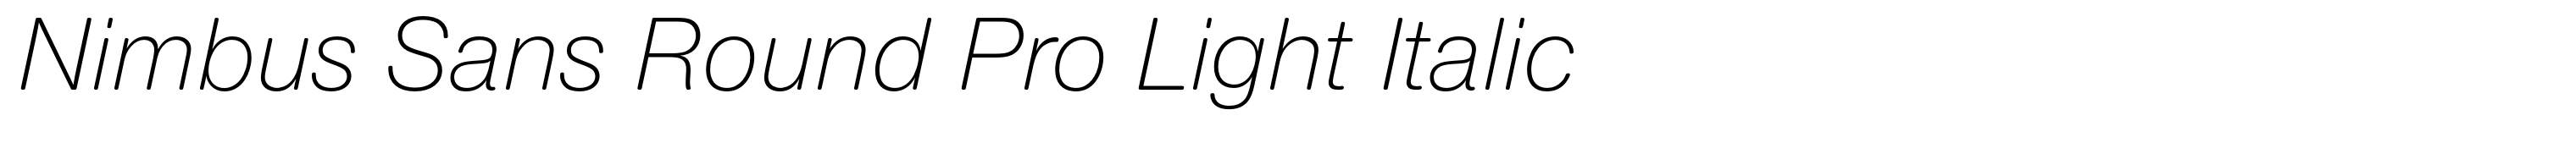 Nimbus Sans Round Pro Light Italic